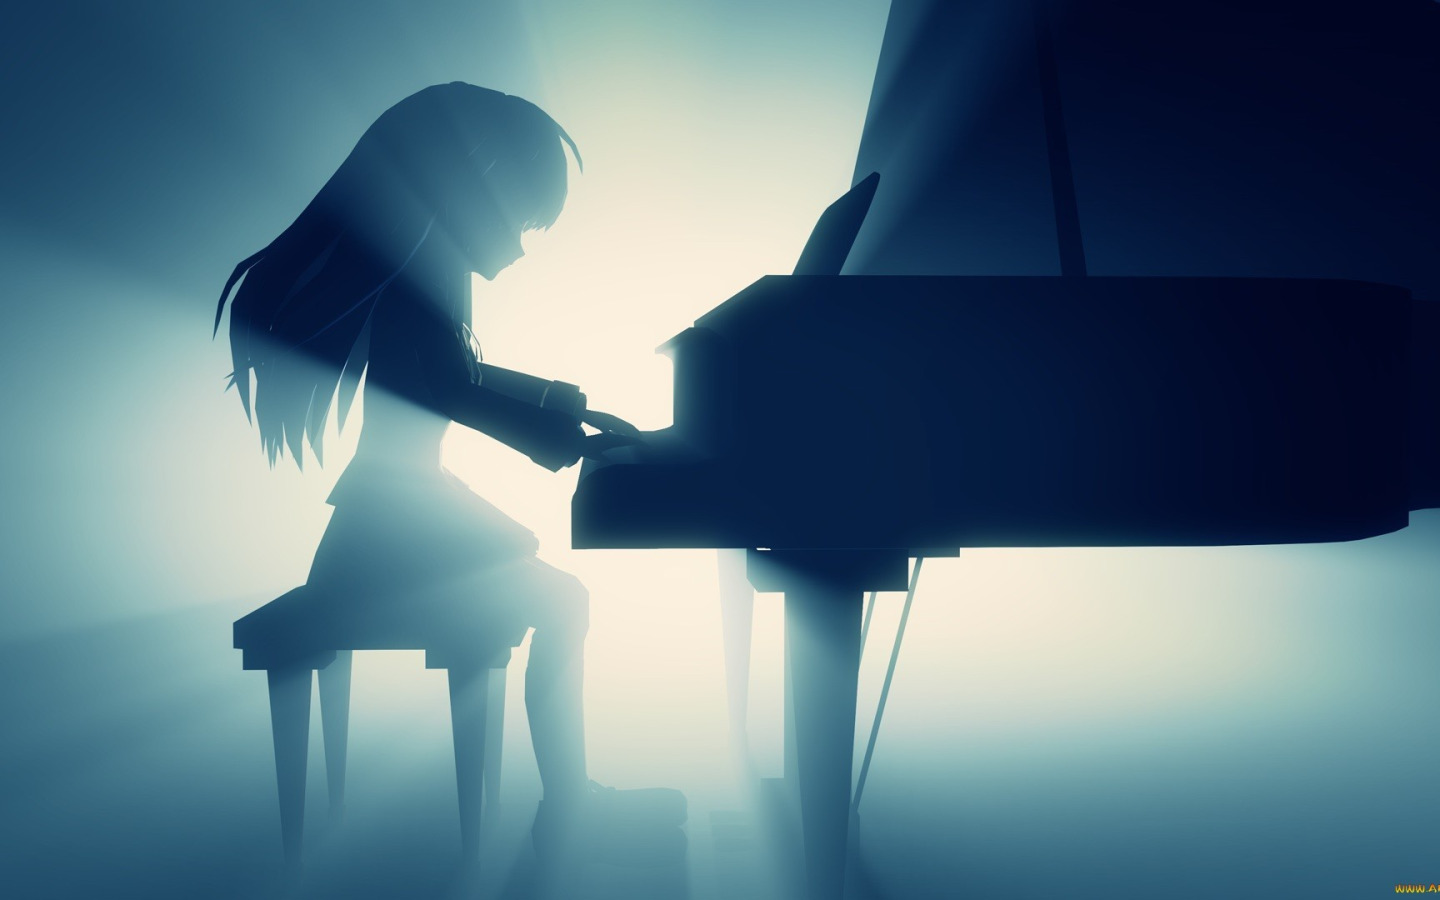 Пианистка светит сисями третьего размера в своей комнате